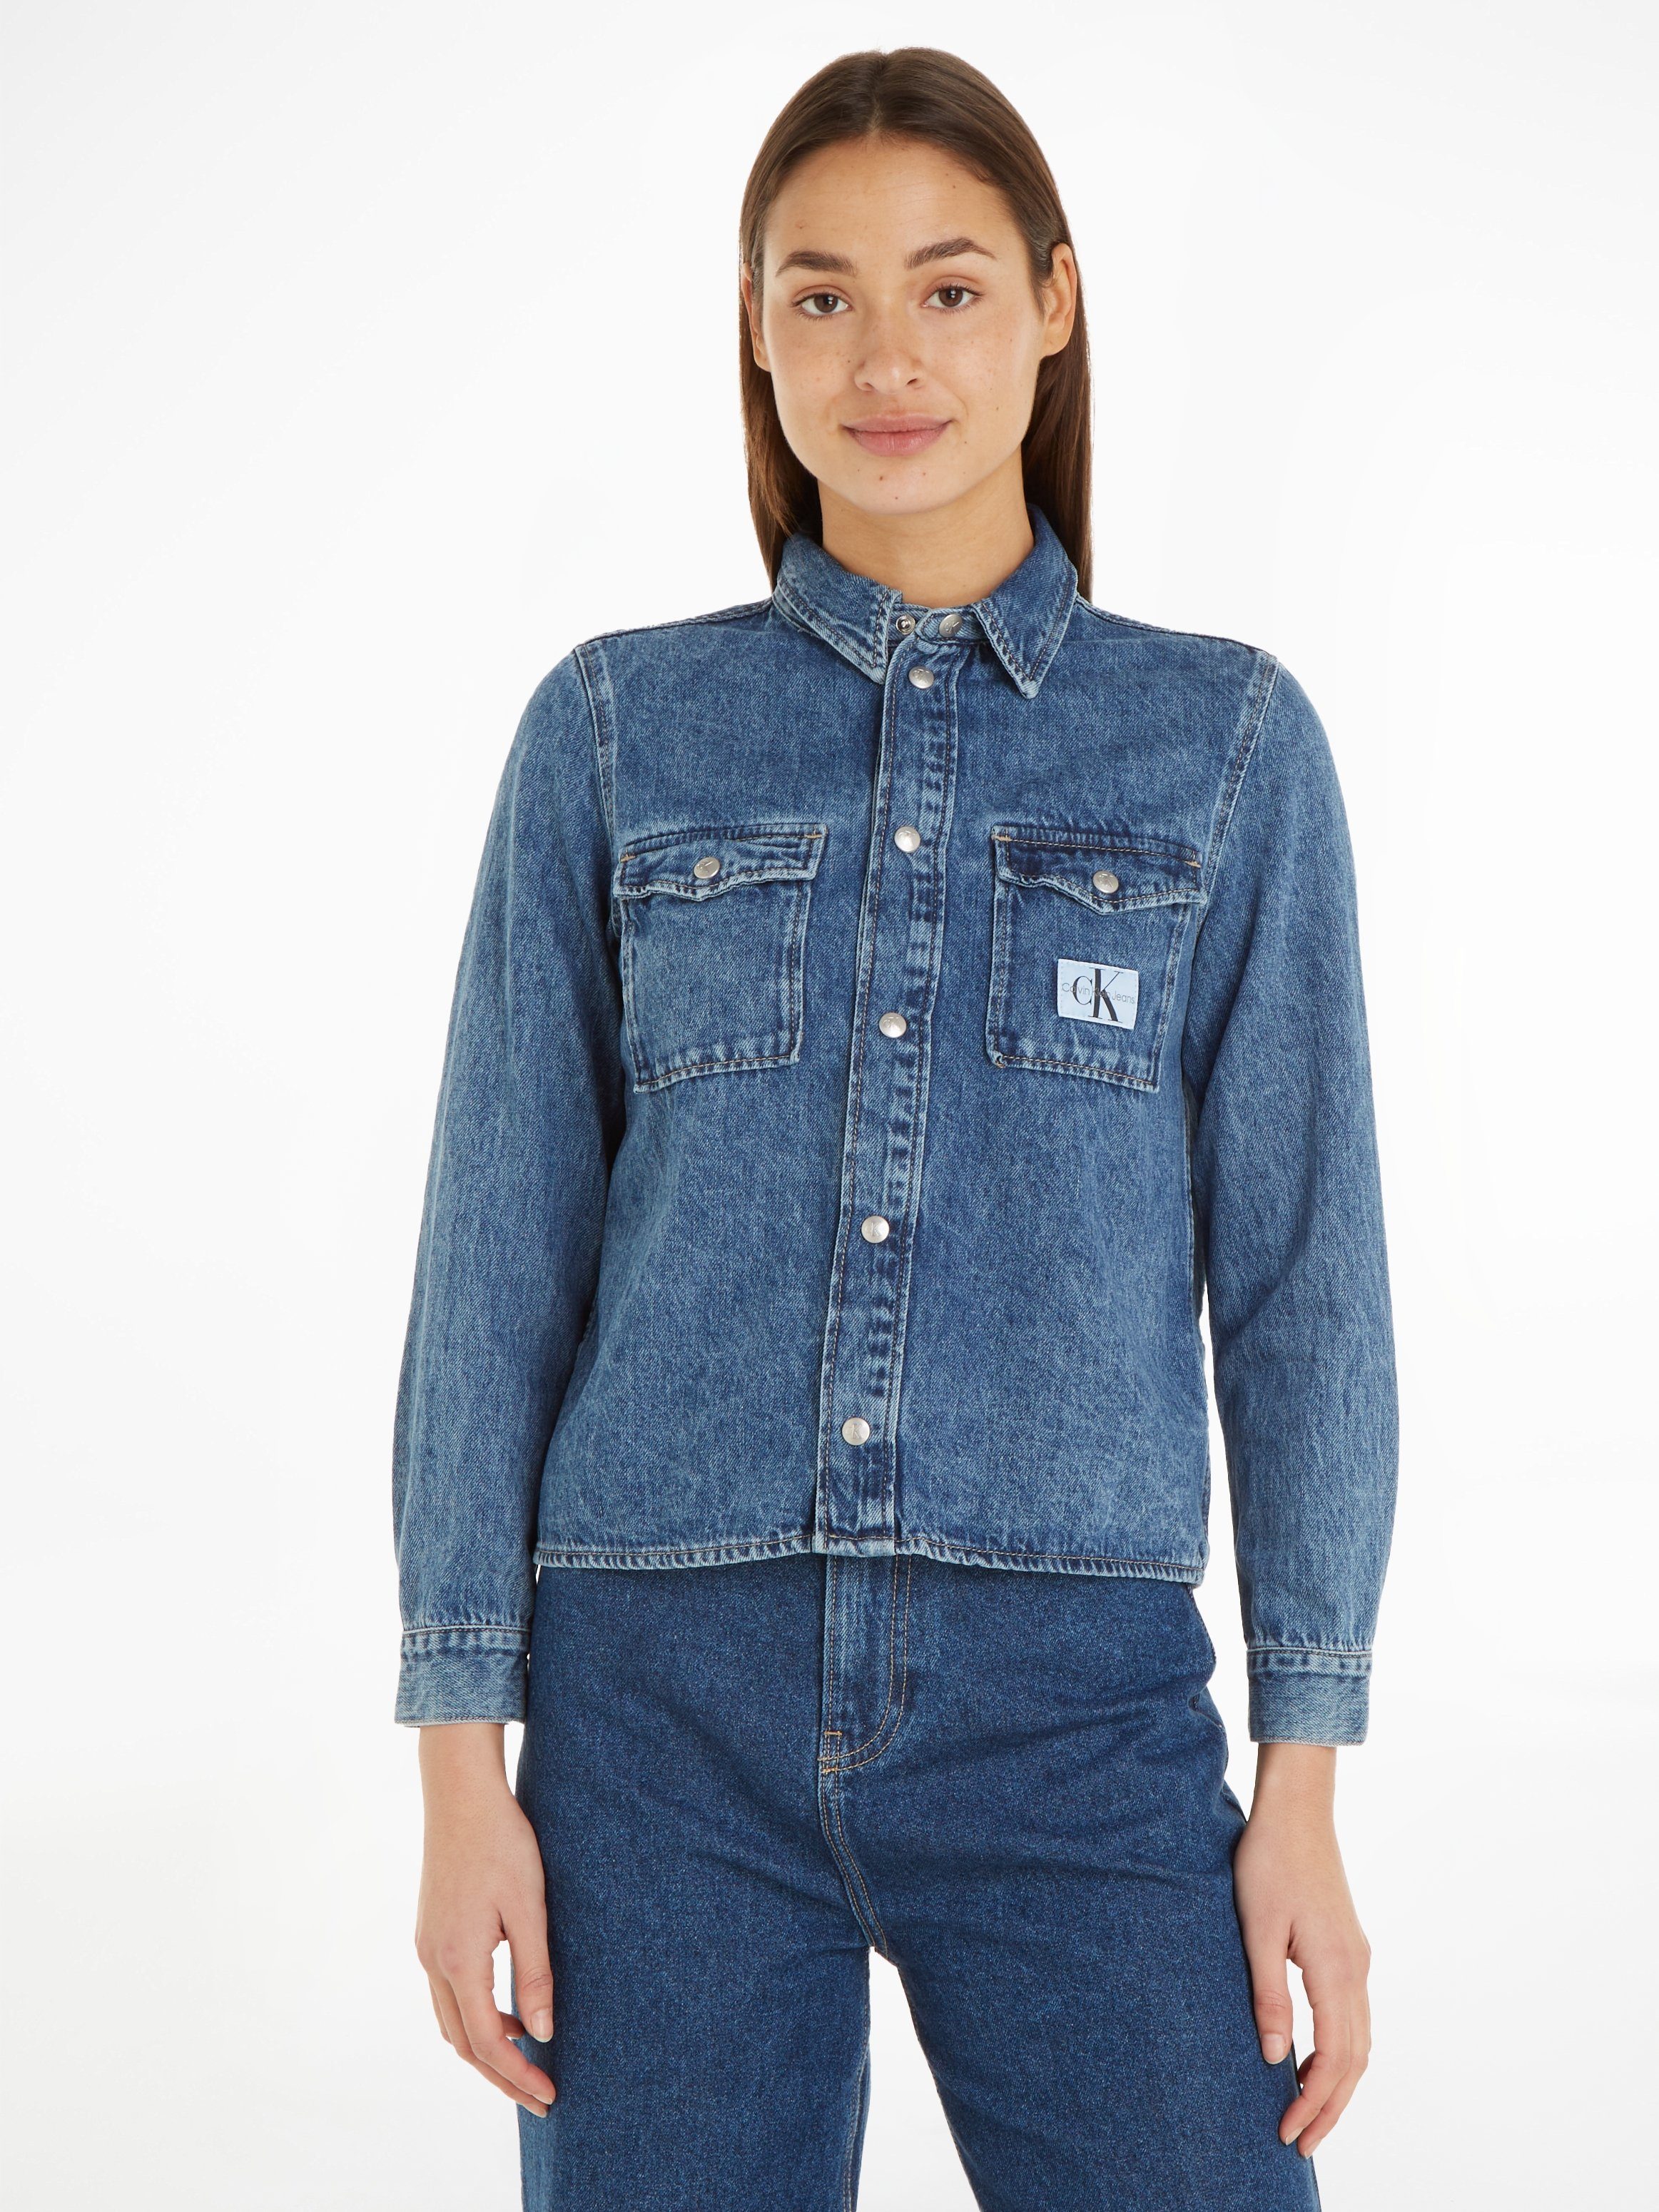 Calvin Klein Jeans Baumwolle DENIM SLIM SHIRT, Jeansbluse recycelt Denim/Jeans aus 20